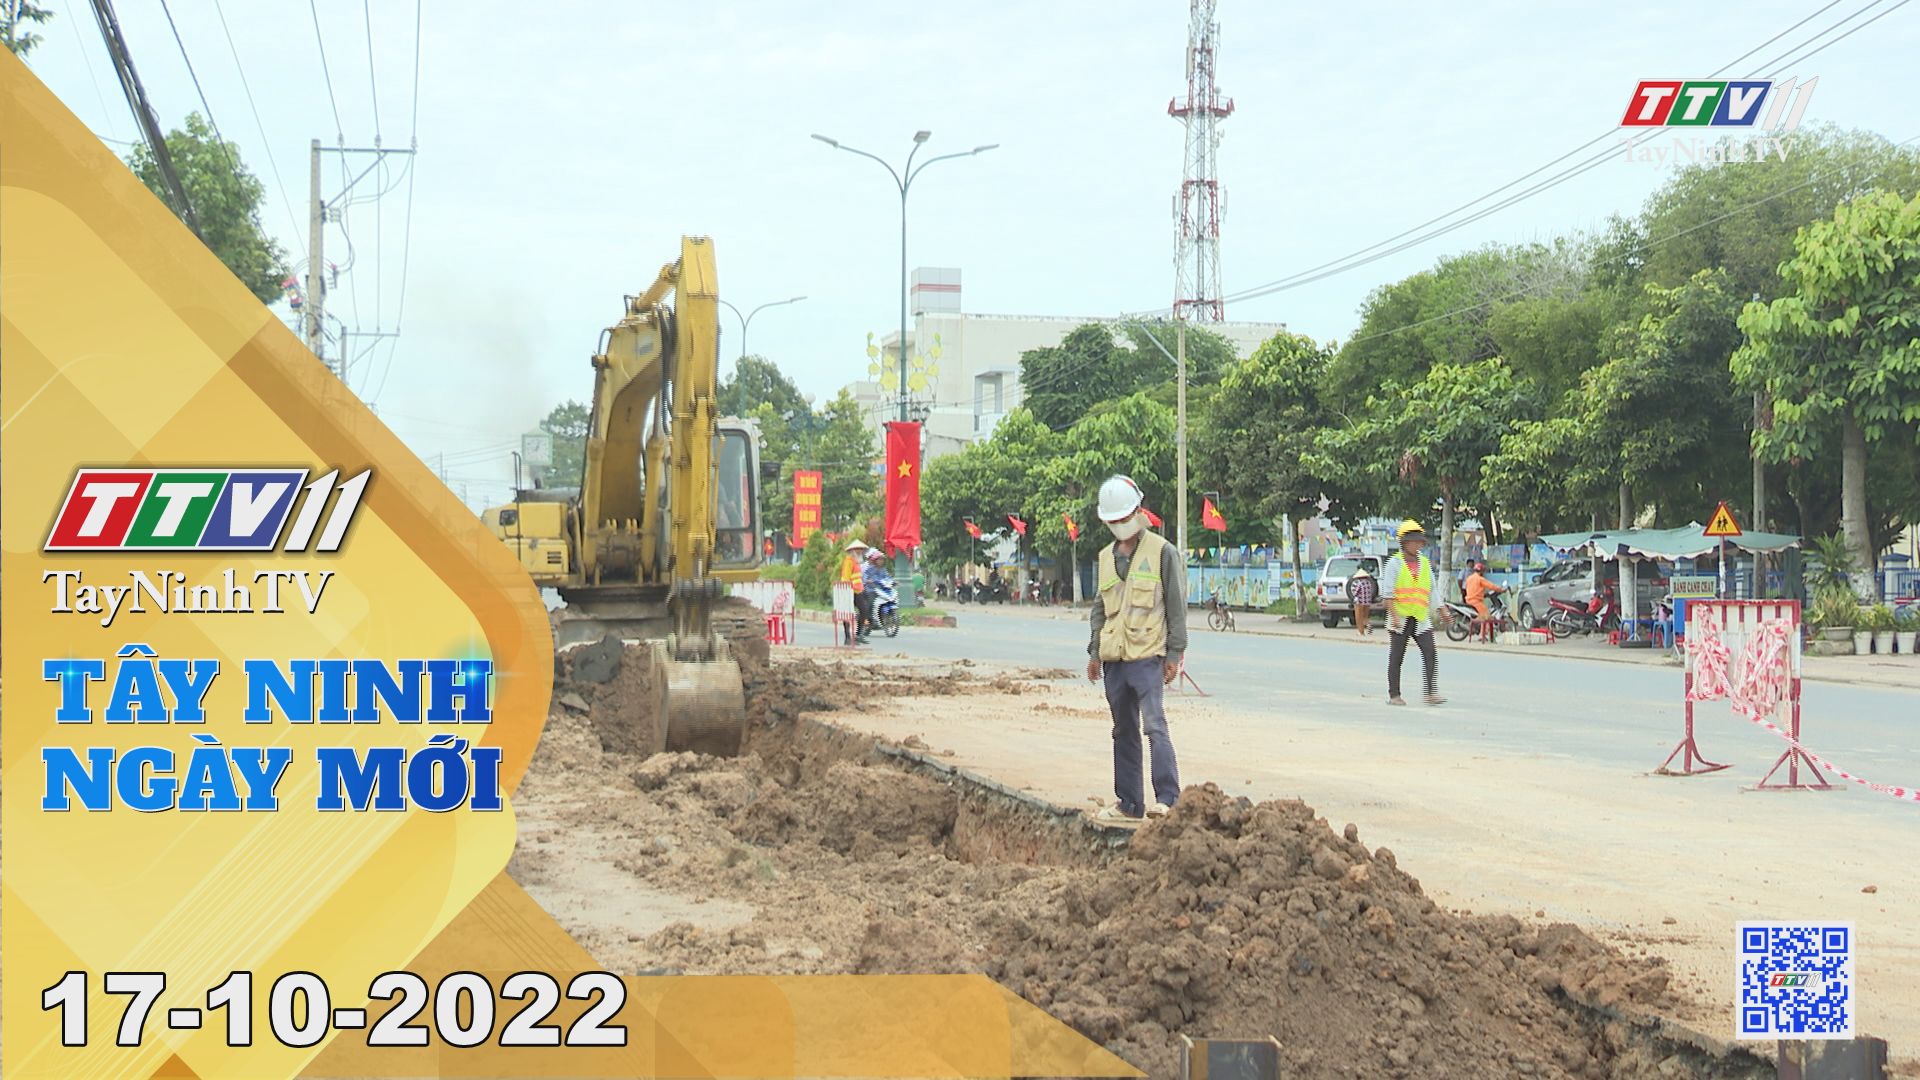 Tây Ninh ngày mới 17-10-2022 | Tin tức hôm nay | TayNinhTV